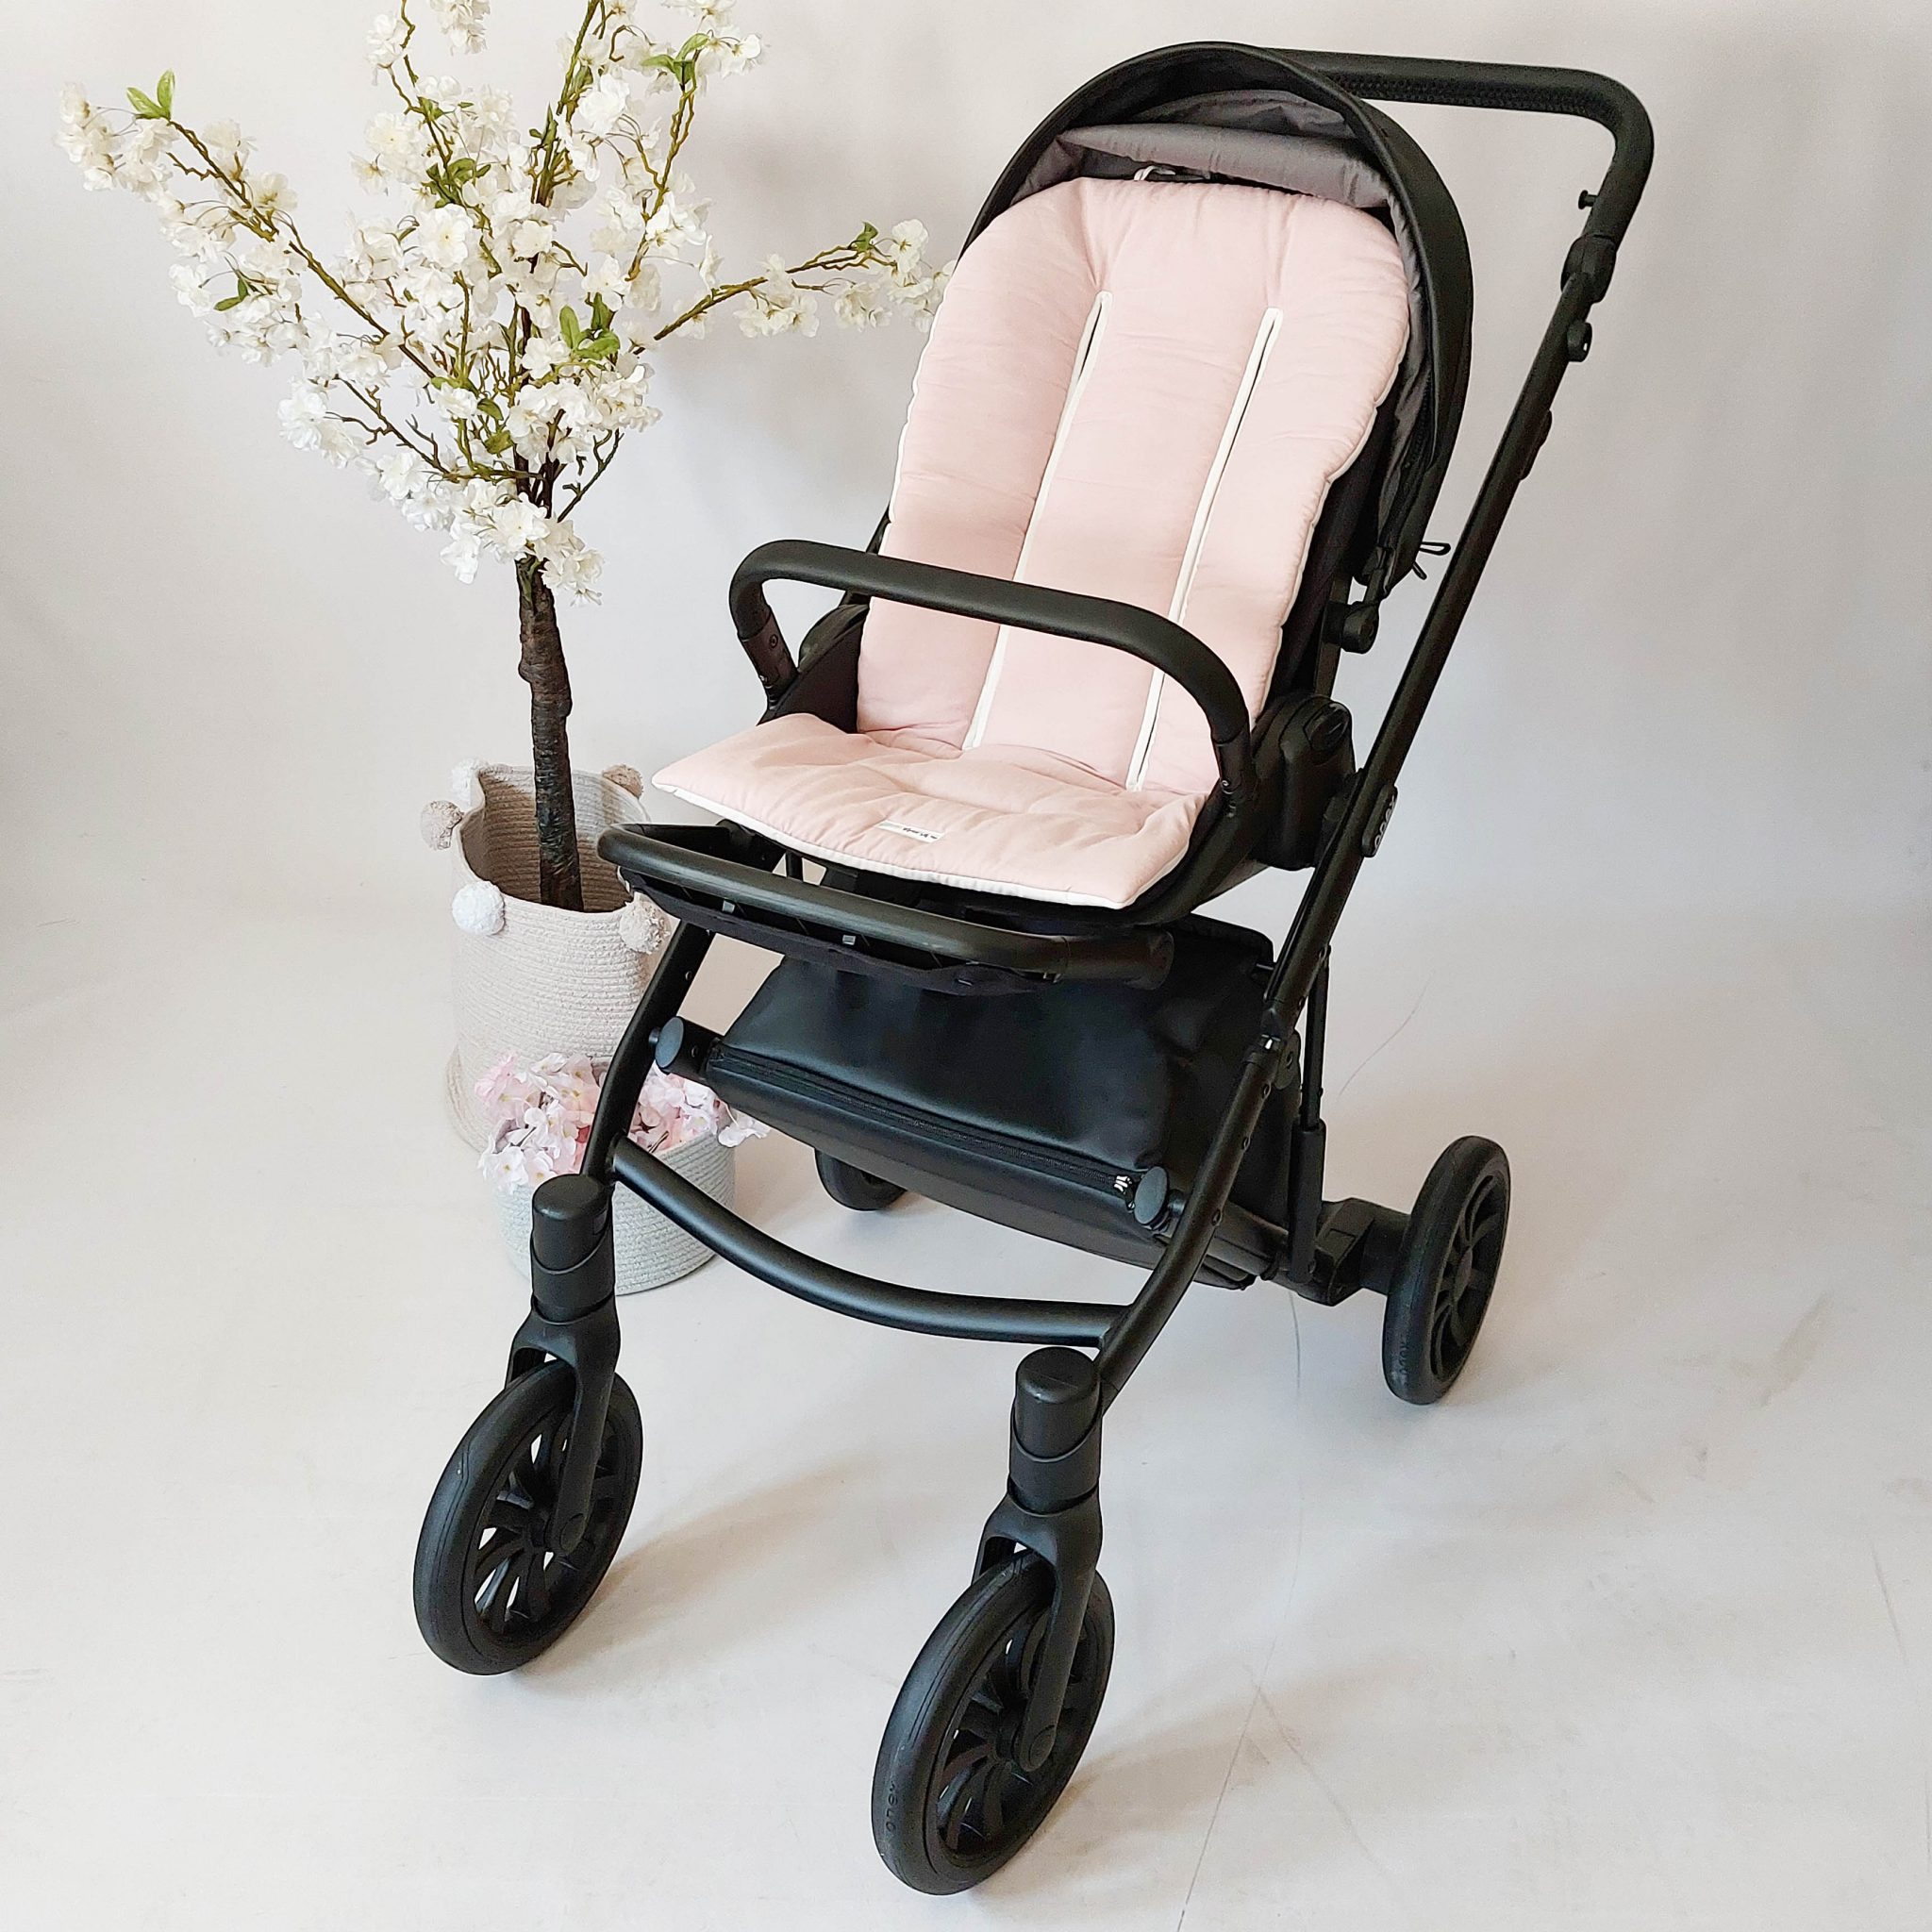 Colchoneta para silla de paseo universal rosa